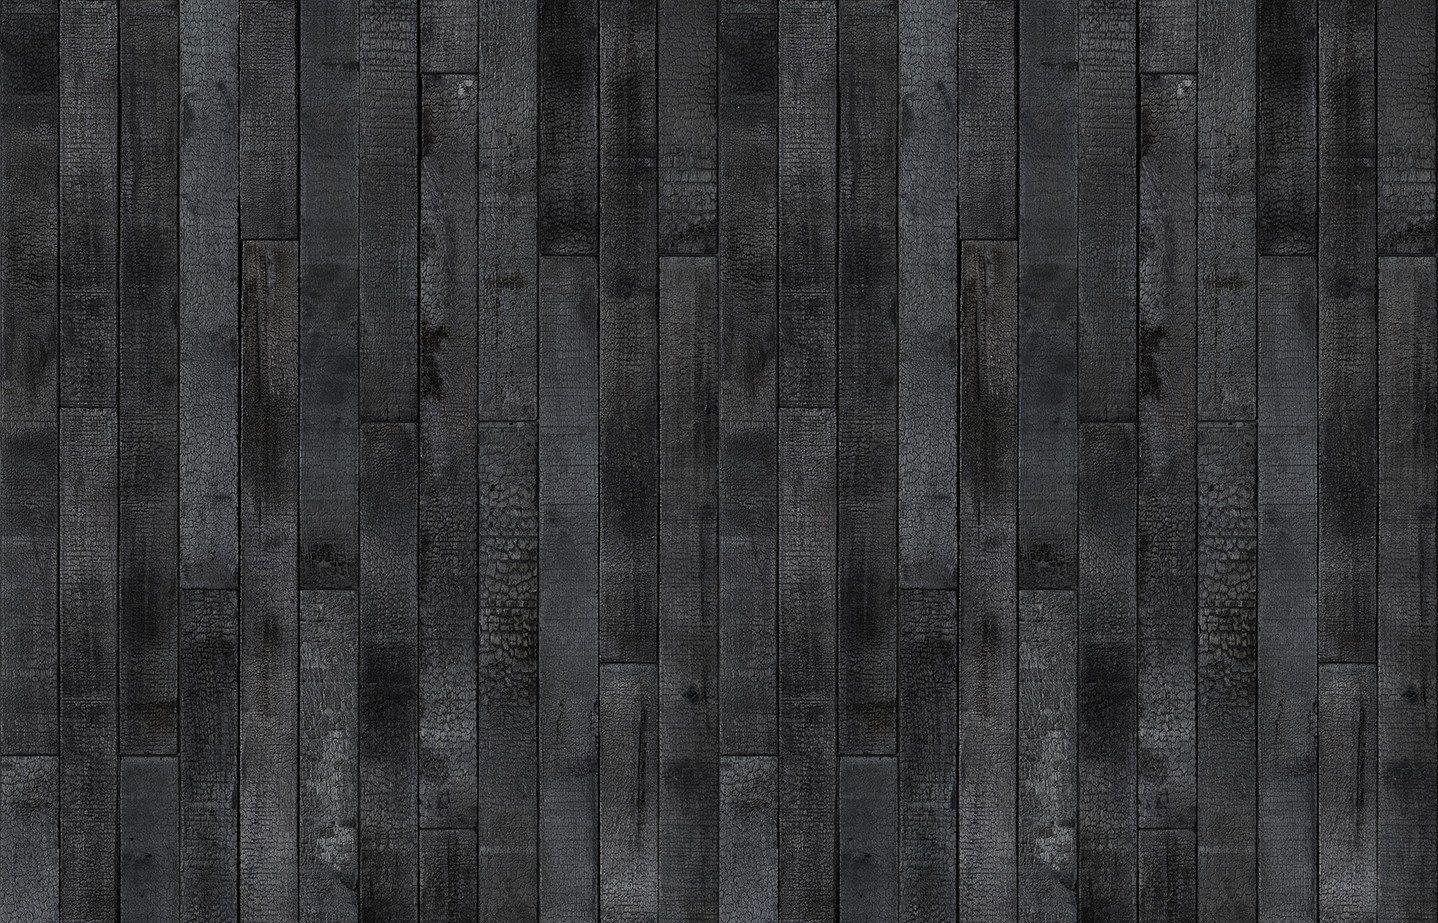 Maarten Baas Burnt Wood Wallpaper design by Piet Hein Eek for NLXL